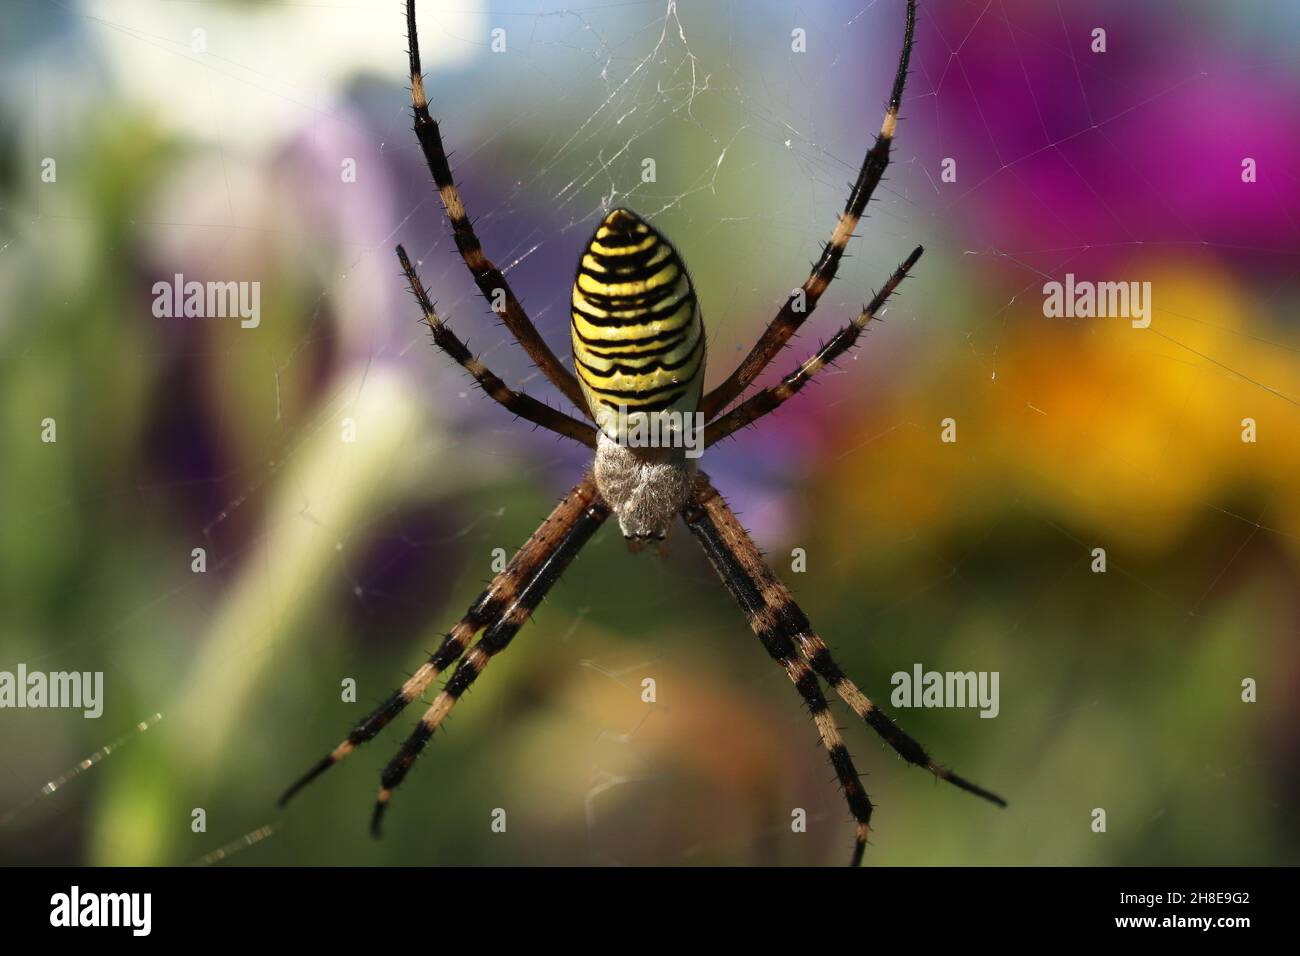 Female spider Argiope Bruennichi, or the wasp-spider on her spiderweb. Blurred background. Stock Photo